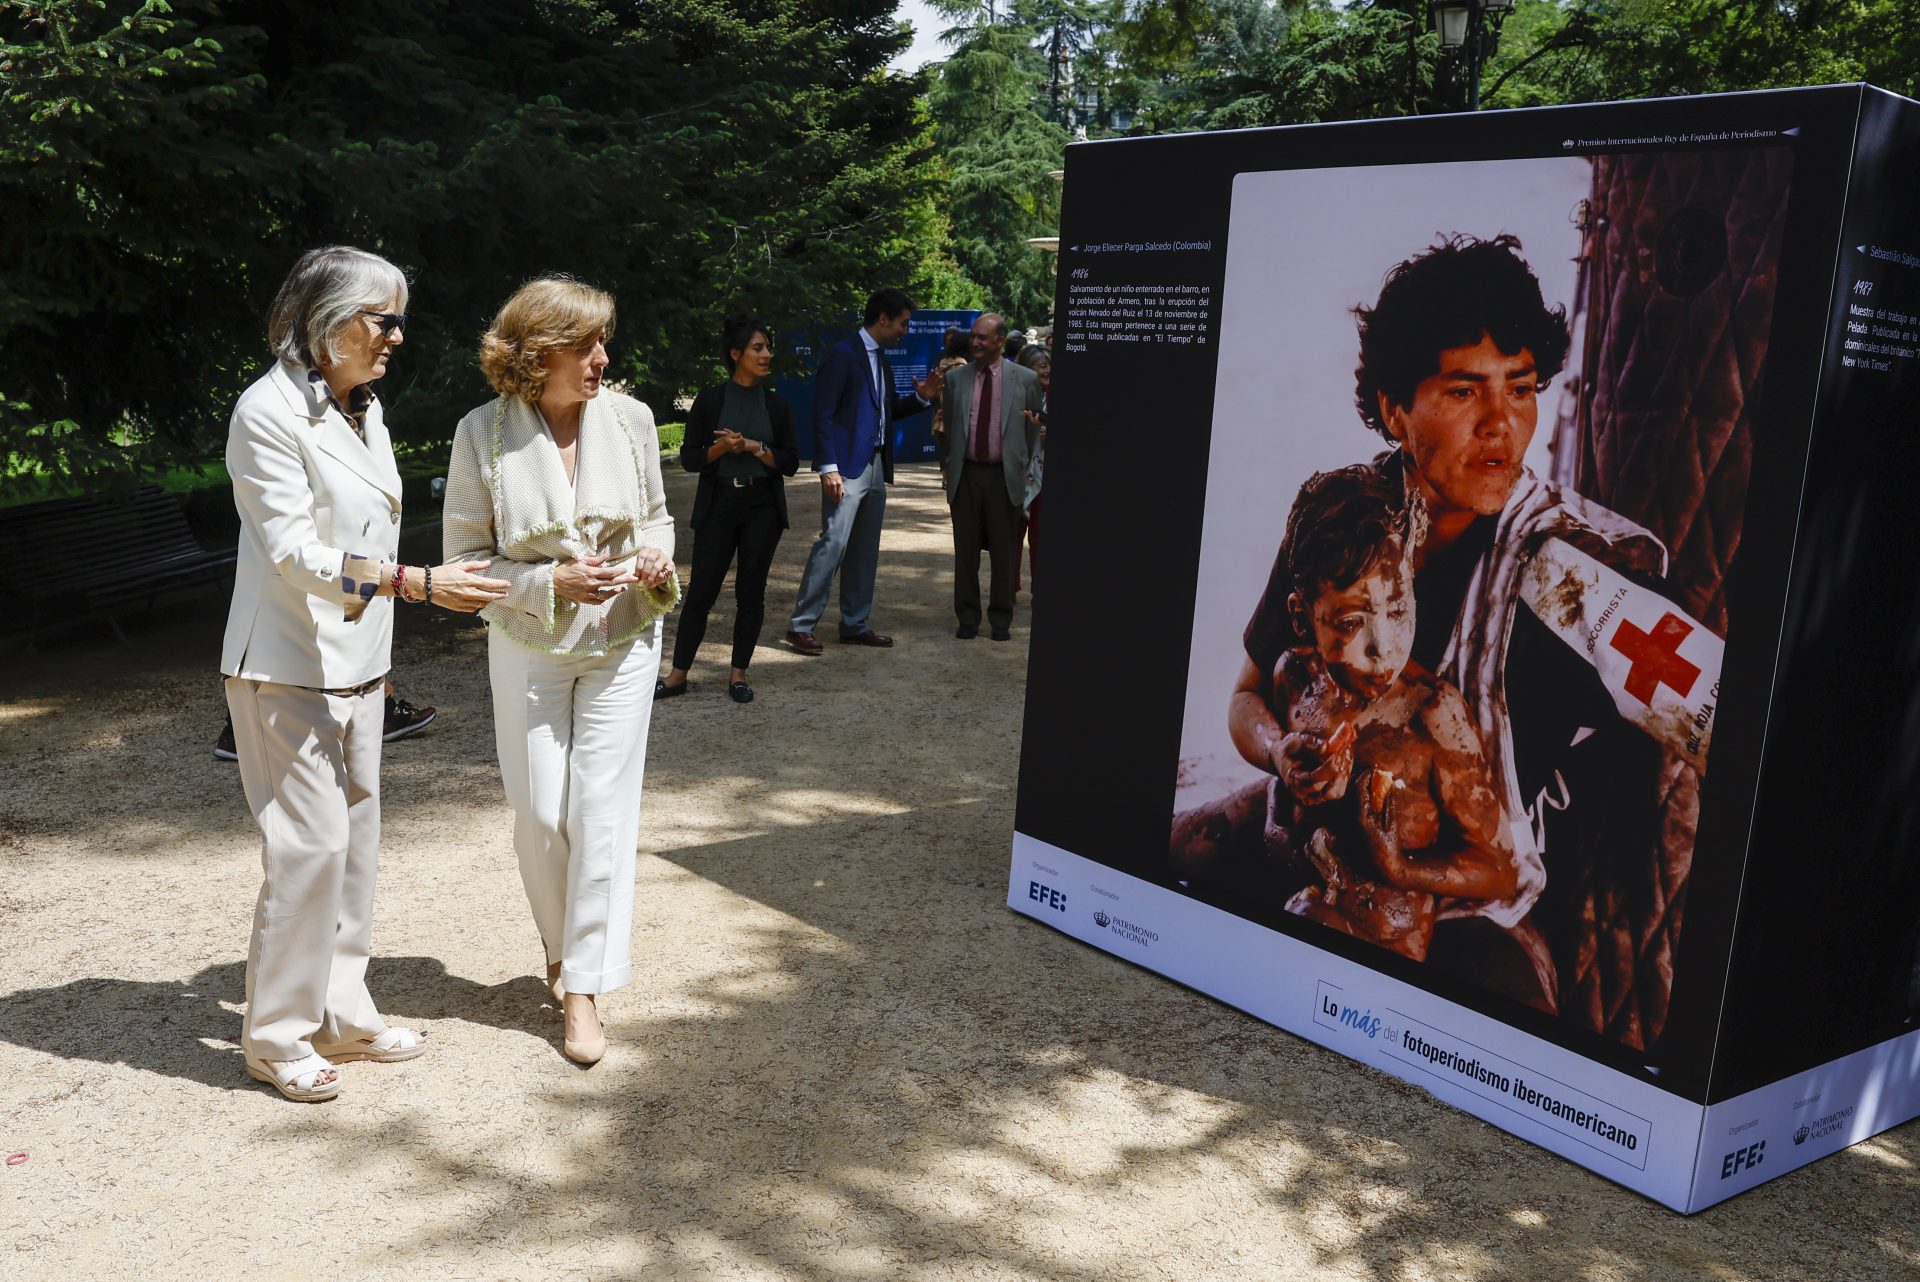 “Lo más del fotoperiodismo iberoamericano”: una exposición repasa los últimos 40 años en la región